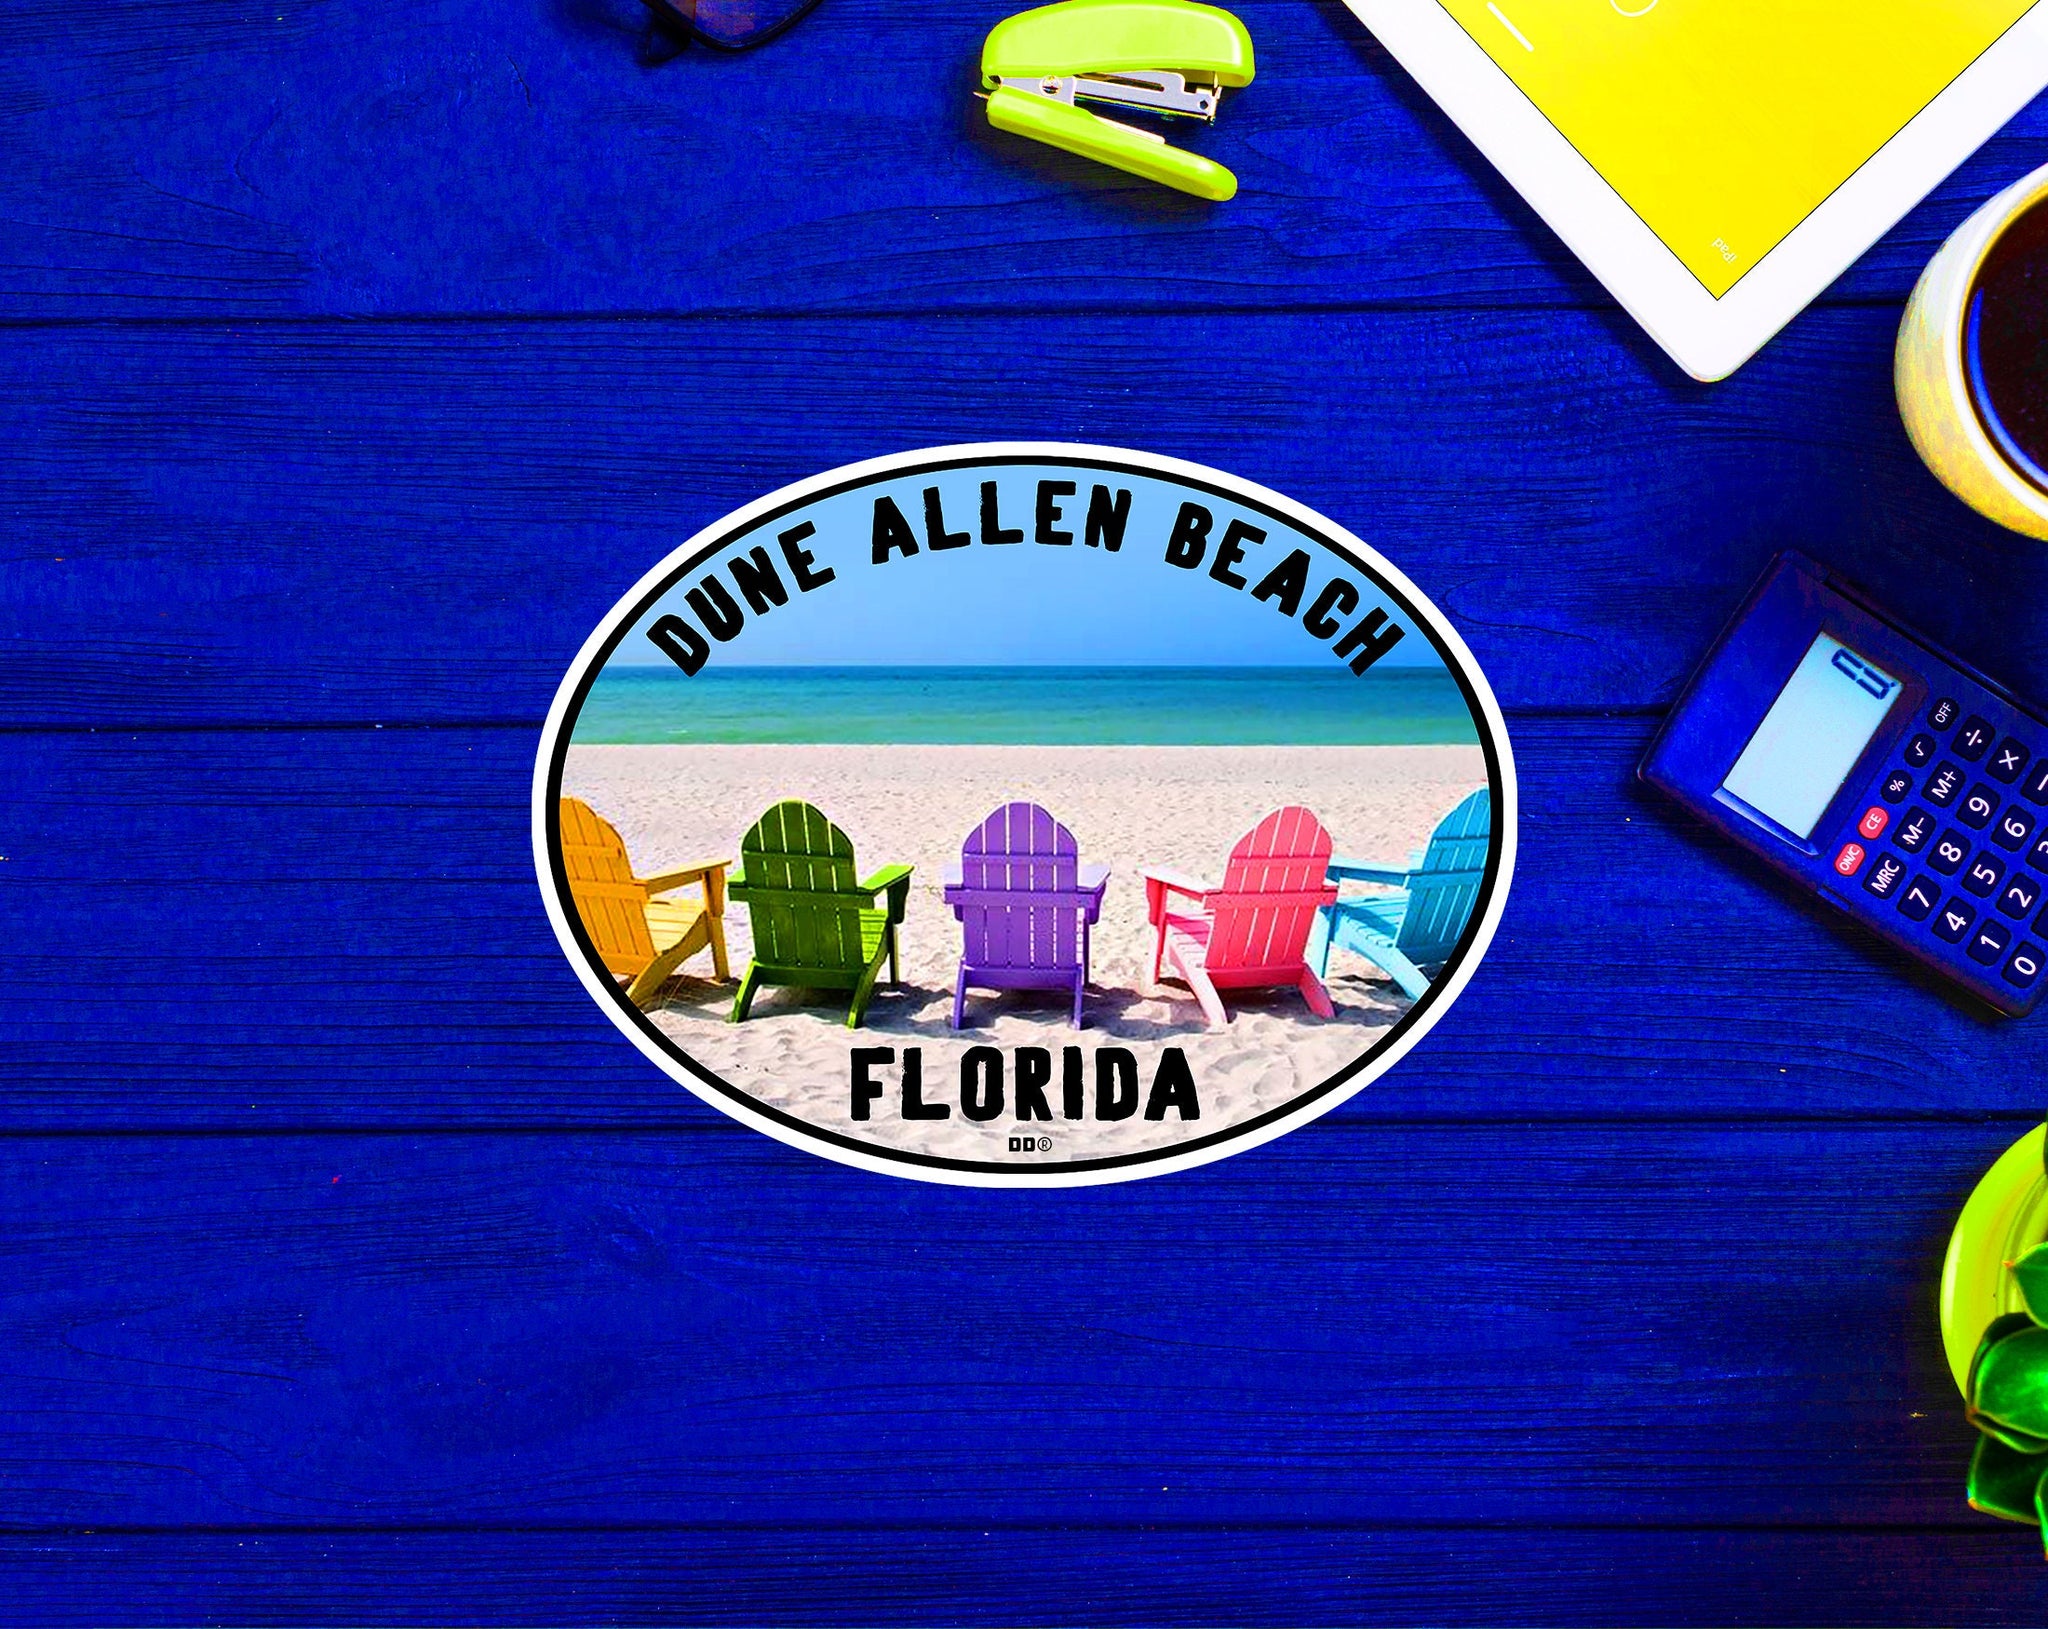 Dune Allen Beach Florida Beach Sticker Decal 4" x 3"